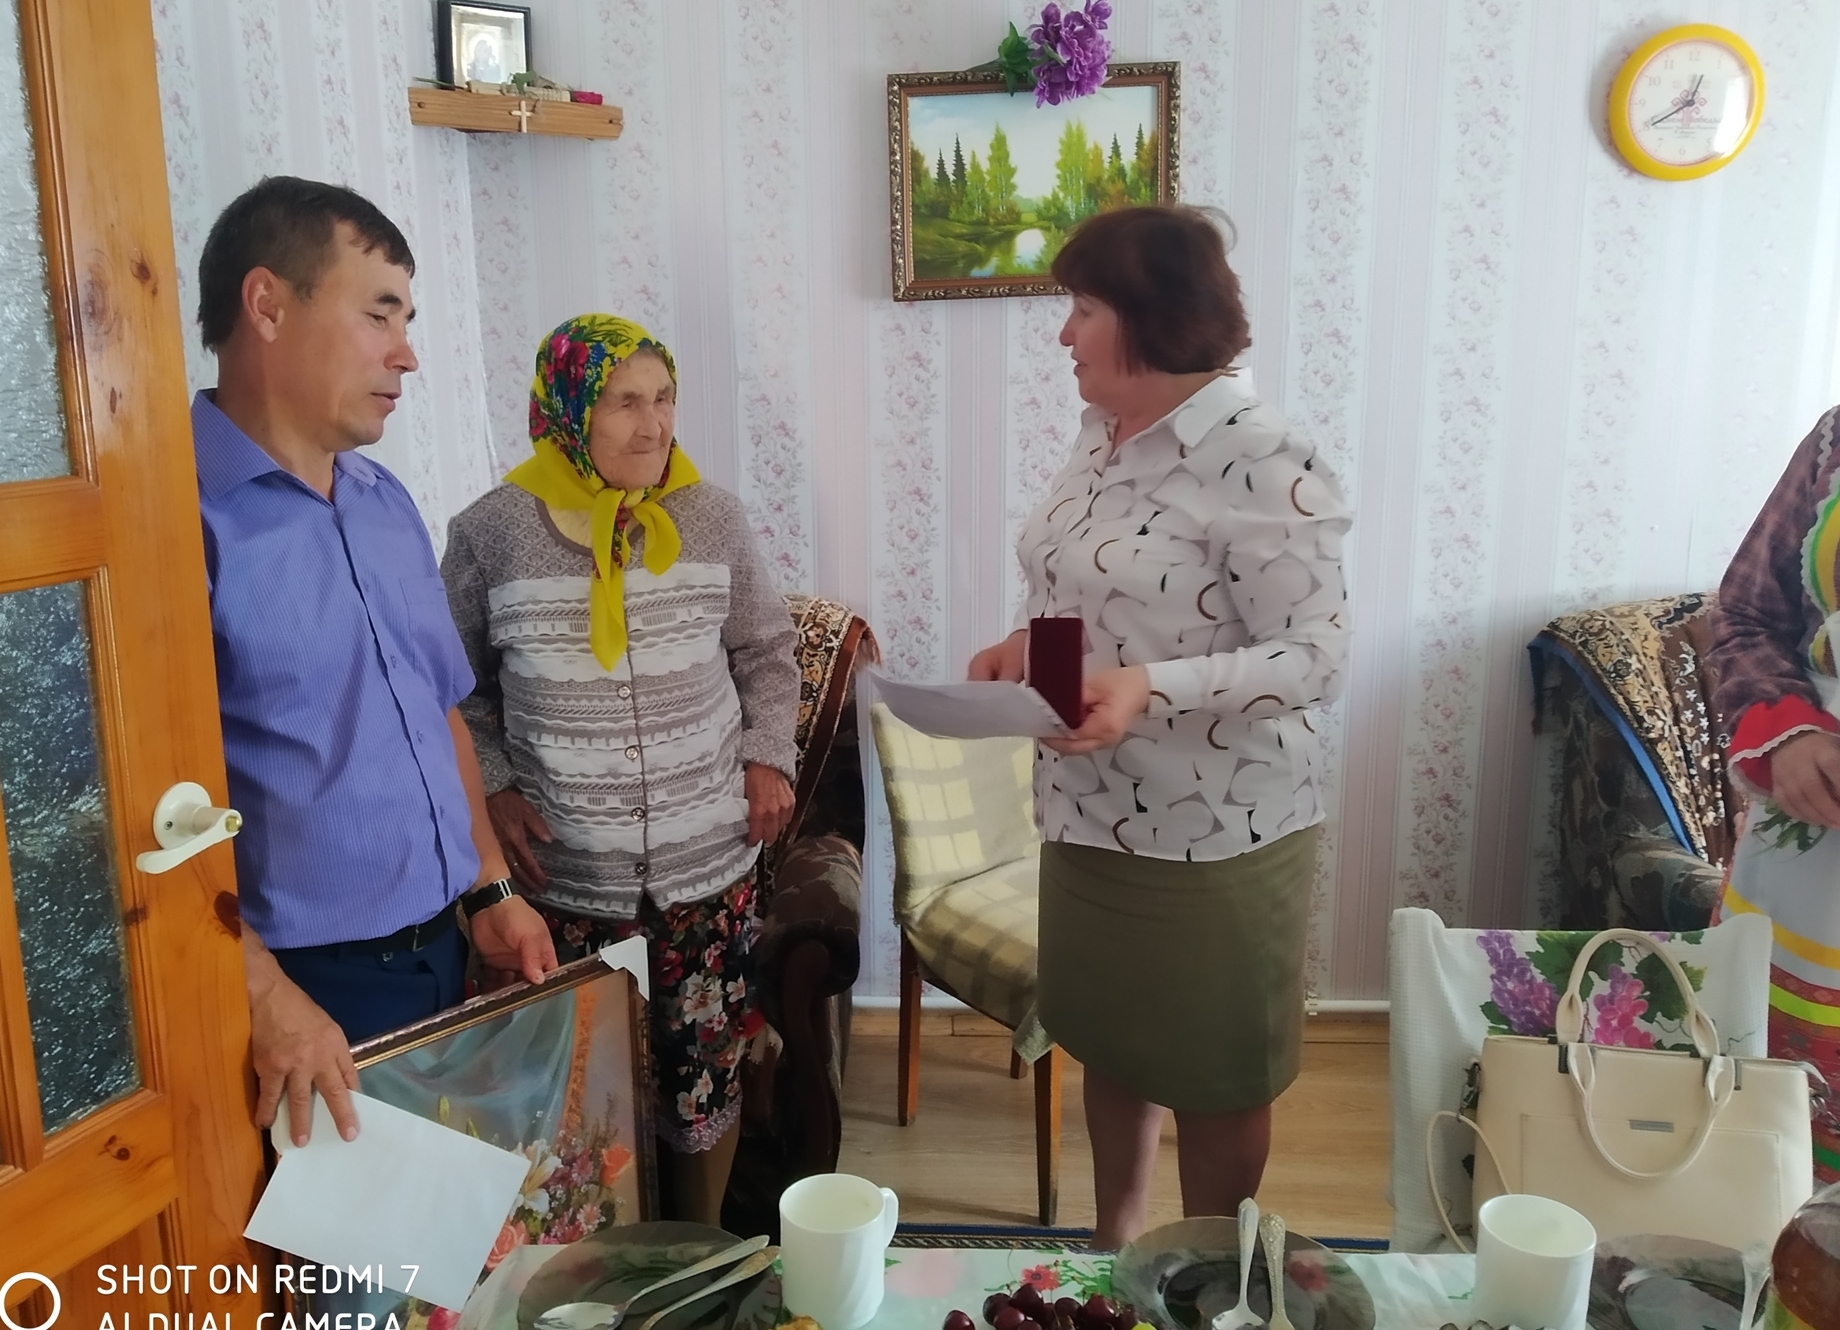 Жительнице чувашского села исполнилось 100 лет: для нее спели народные песни